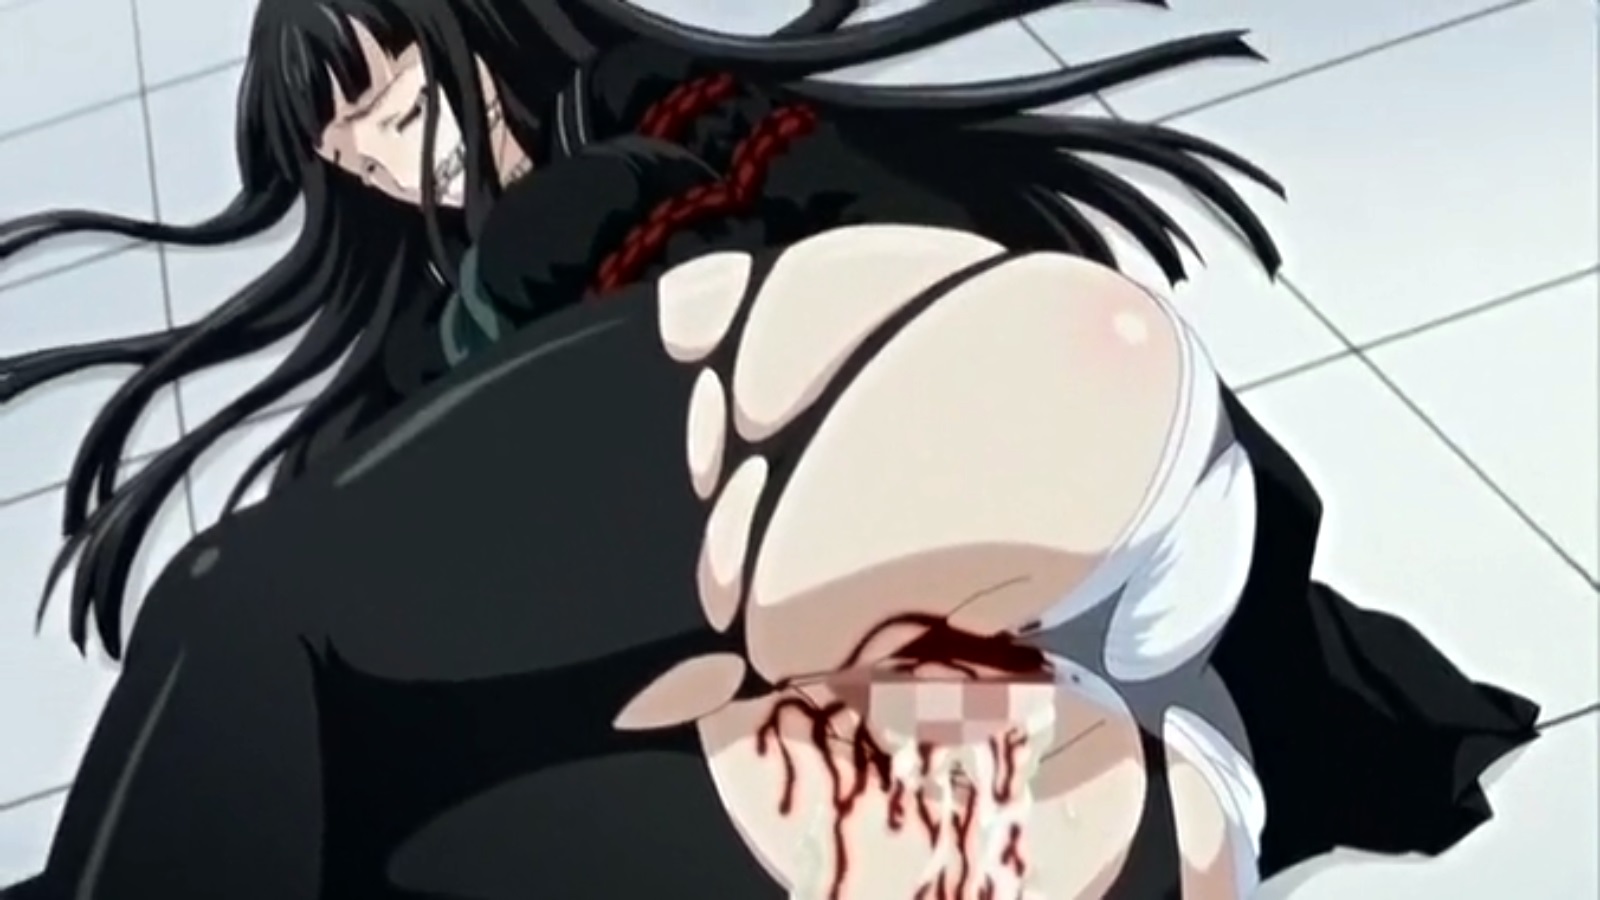 Hardcore Hentai Death - Brutal Hentai Movie Rape, Blood, Ache, Death | HentaiMovie.Tv